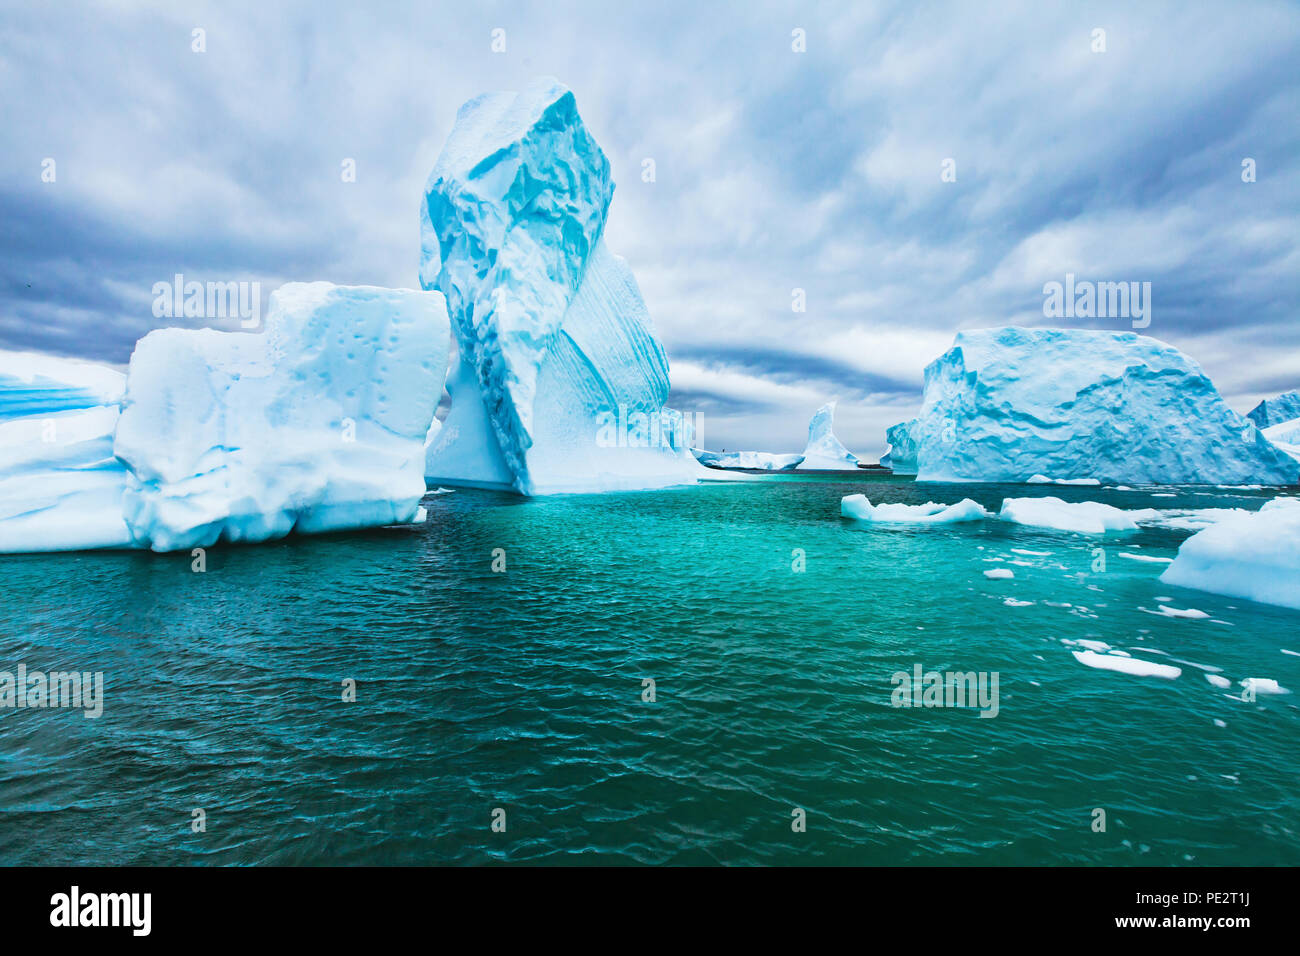 Antarktis schöne kalte Landschaft mit Eisbergen, epische Landschaft, antarktischen Winter Natur Schönheit Stockfoto